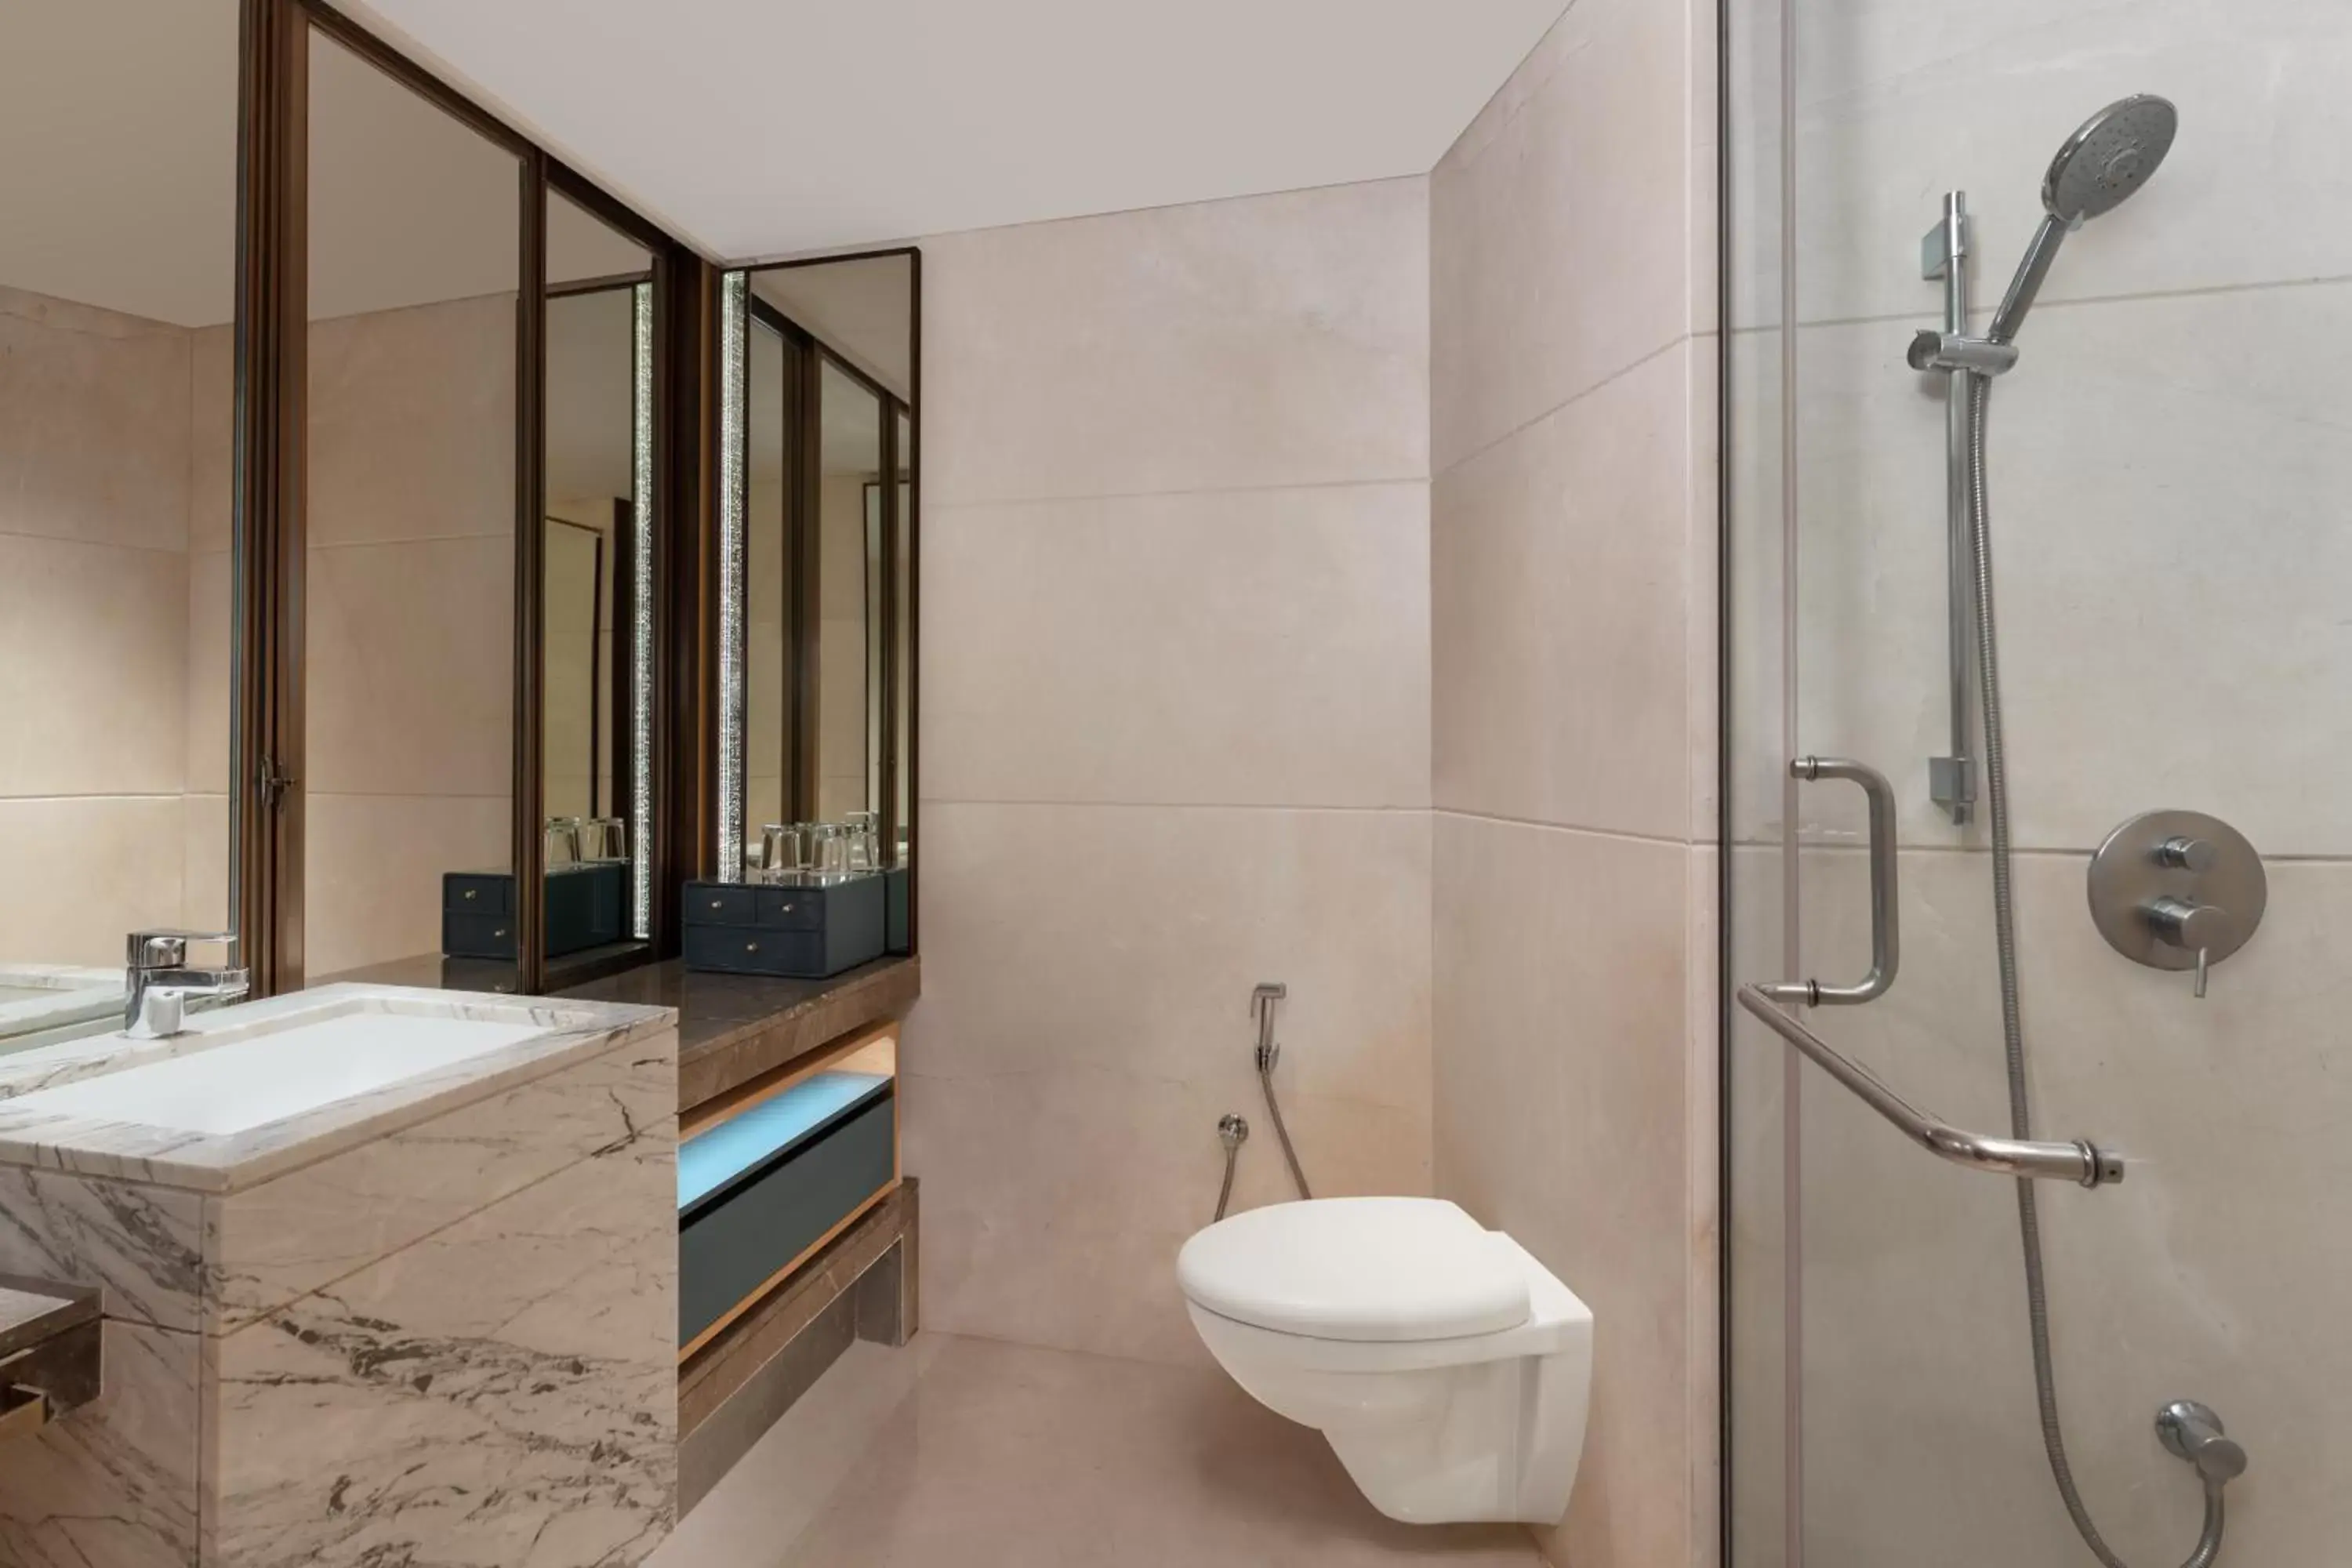 Bathroom in Surat Marriott Hotel